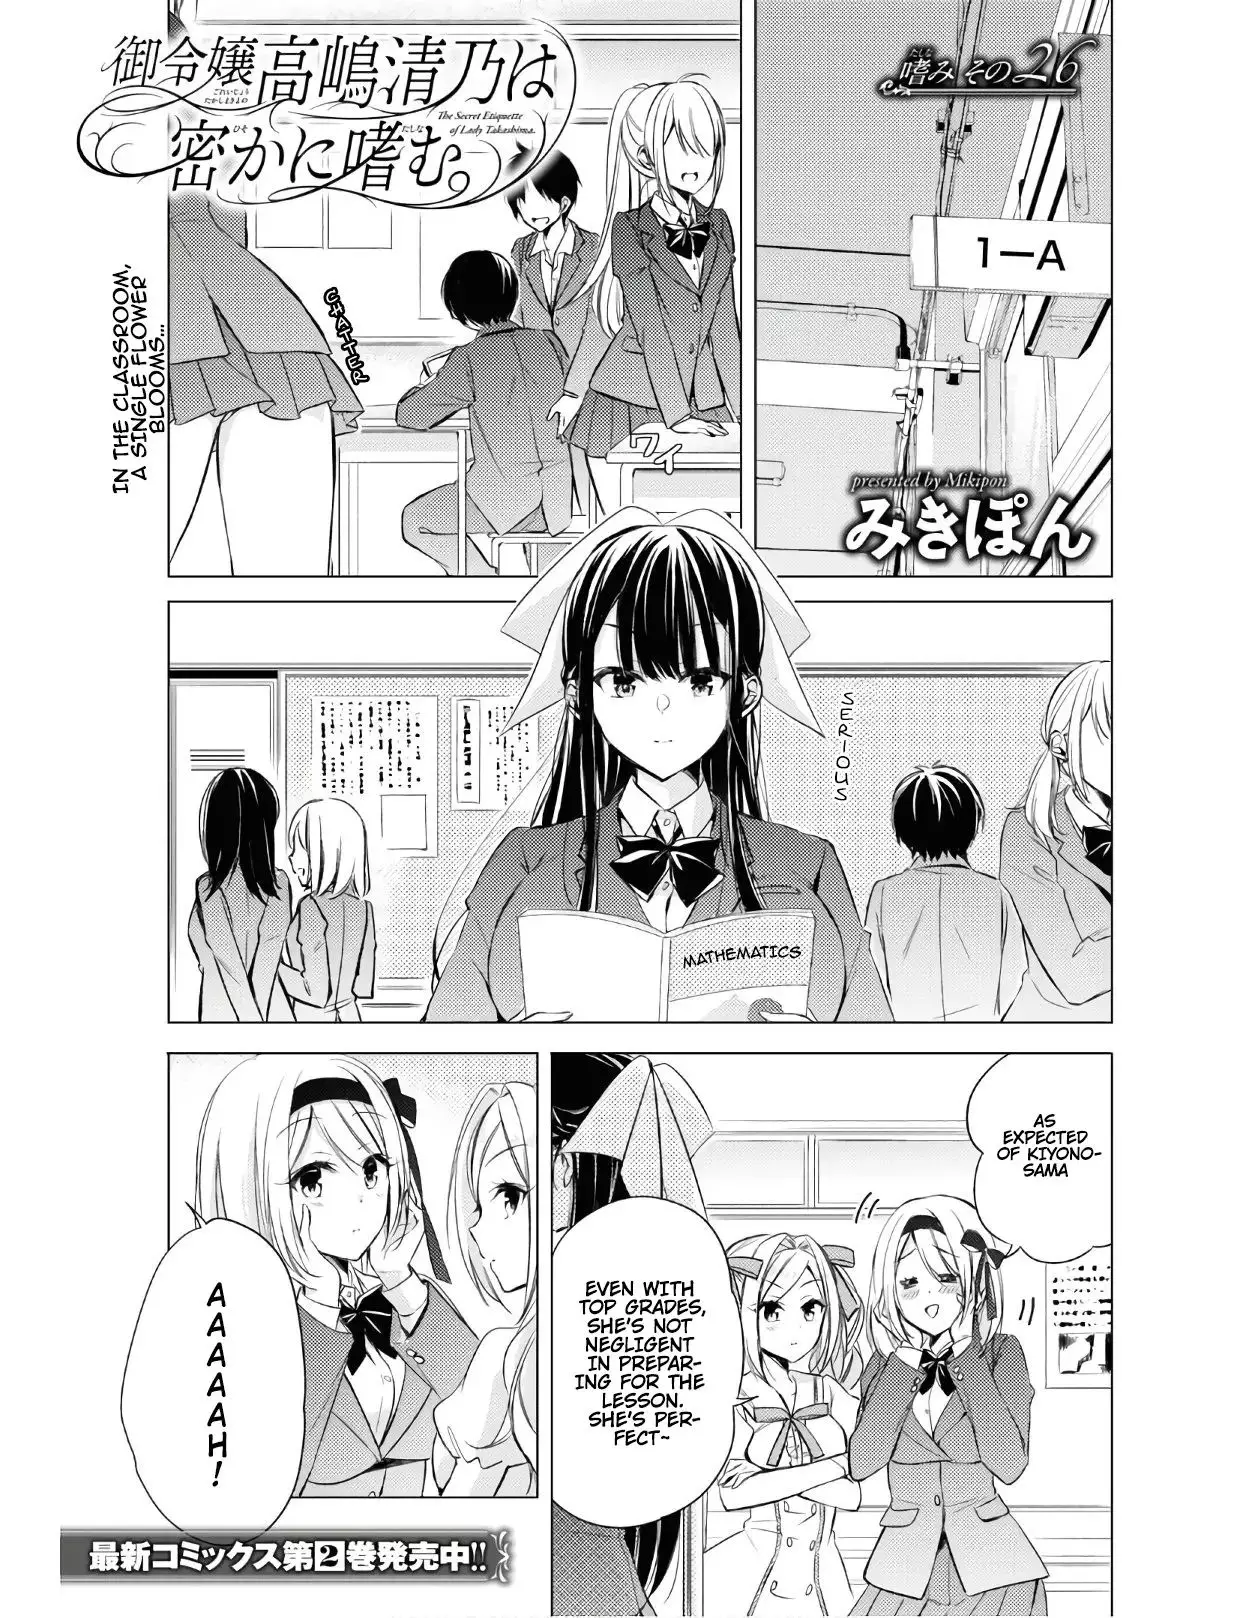 The Secret Etiquette Of Lady Takashima. - 26 page 1-de721a82